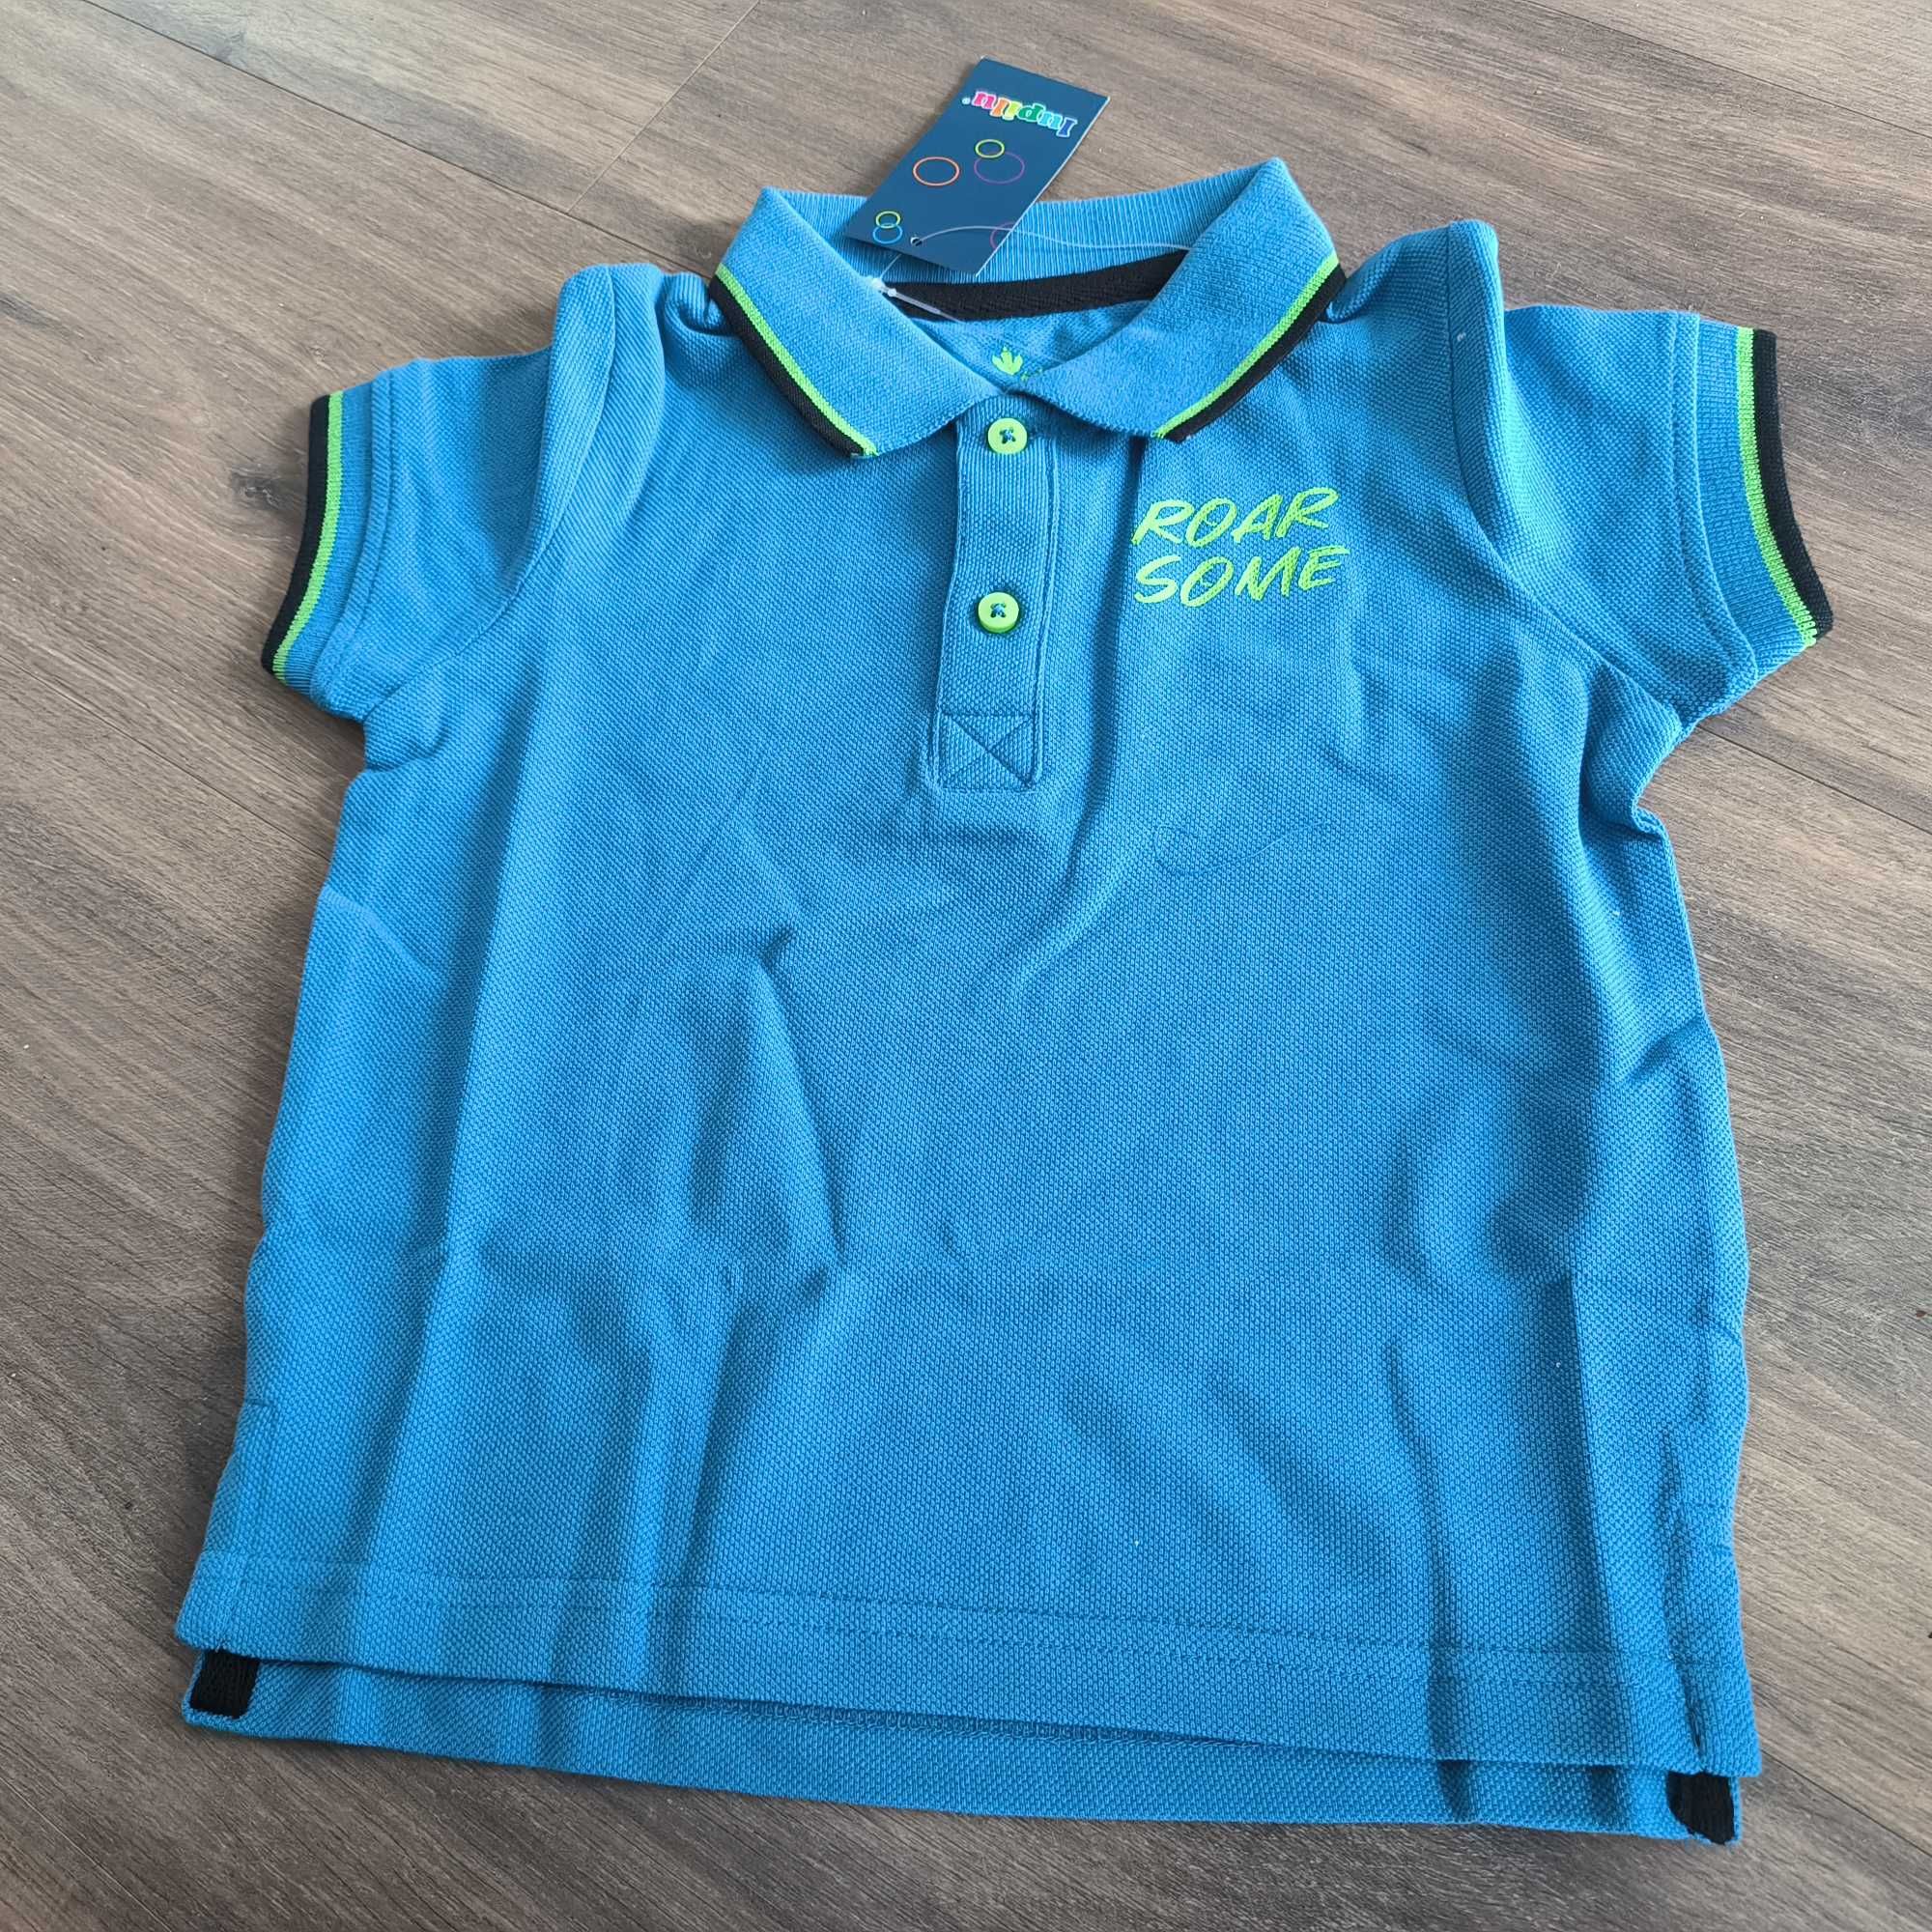 T-shirt polo niebieskie dłuższy tył. Nowy z metką bliźniaki  86/93